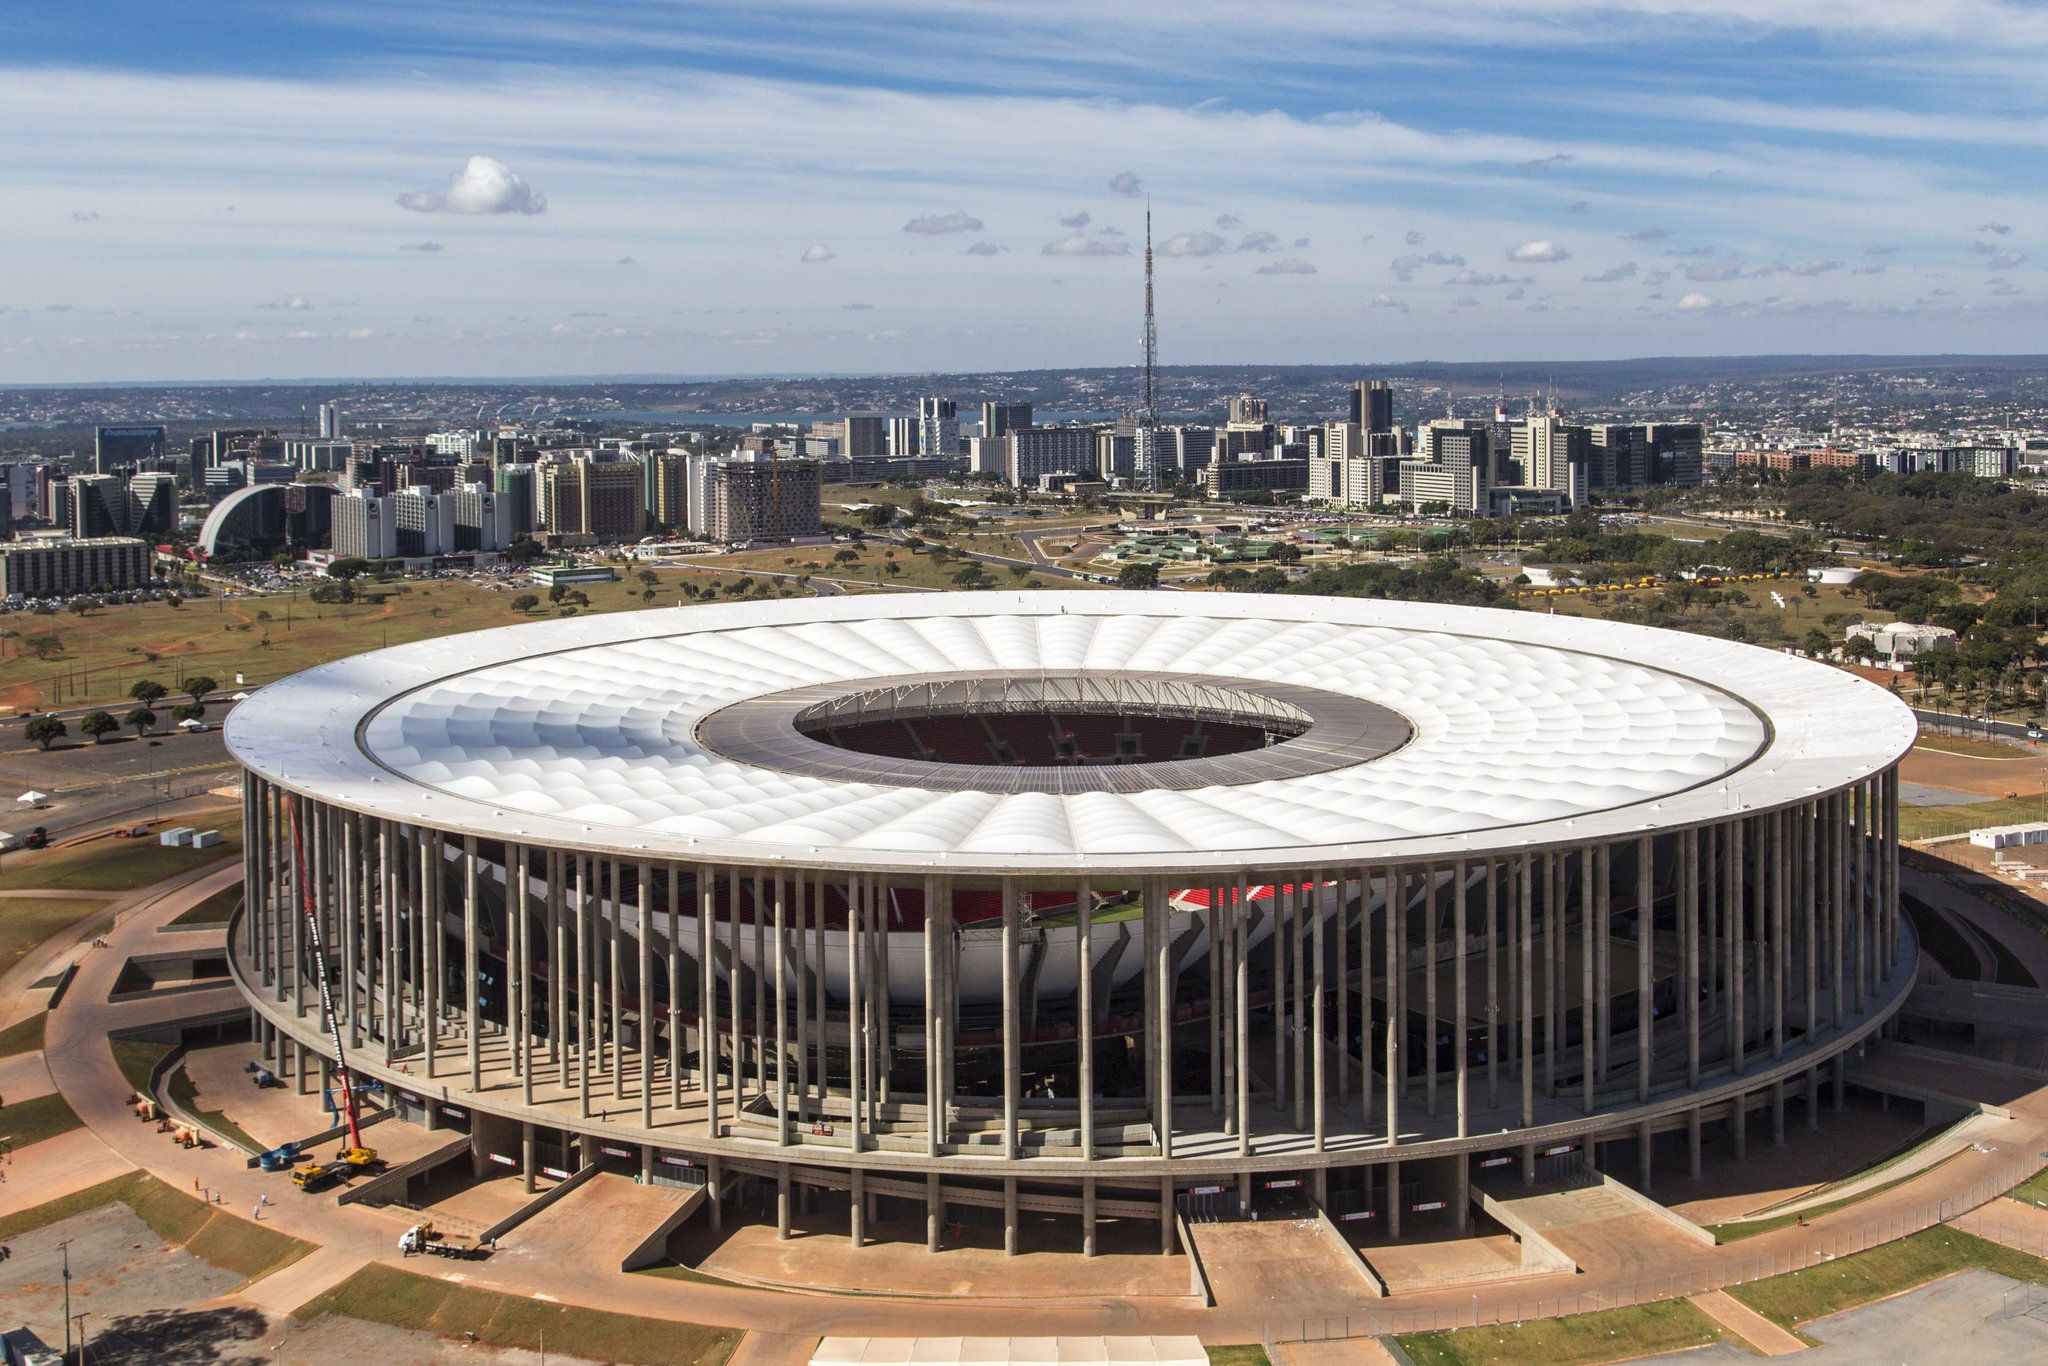 Ingressos de Boavista e Botafogo em Brasília; veja como comprar